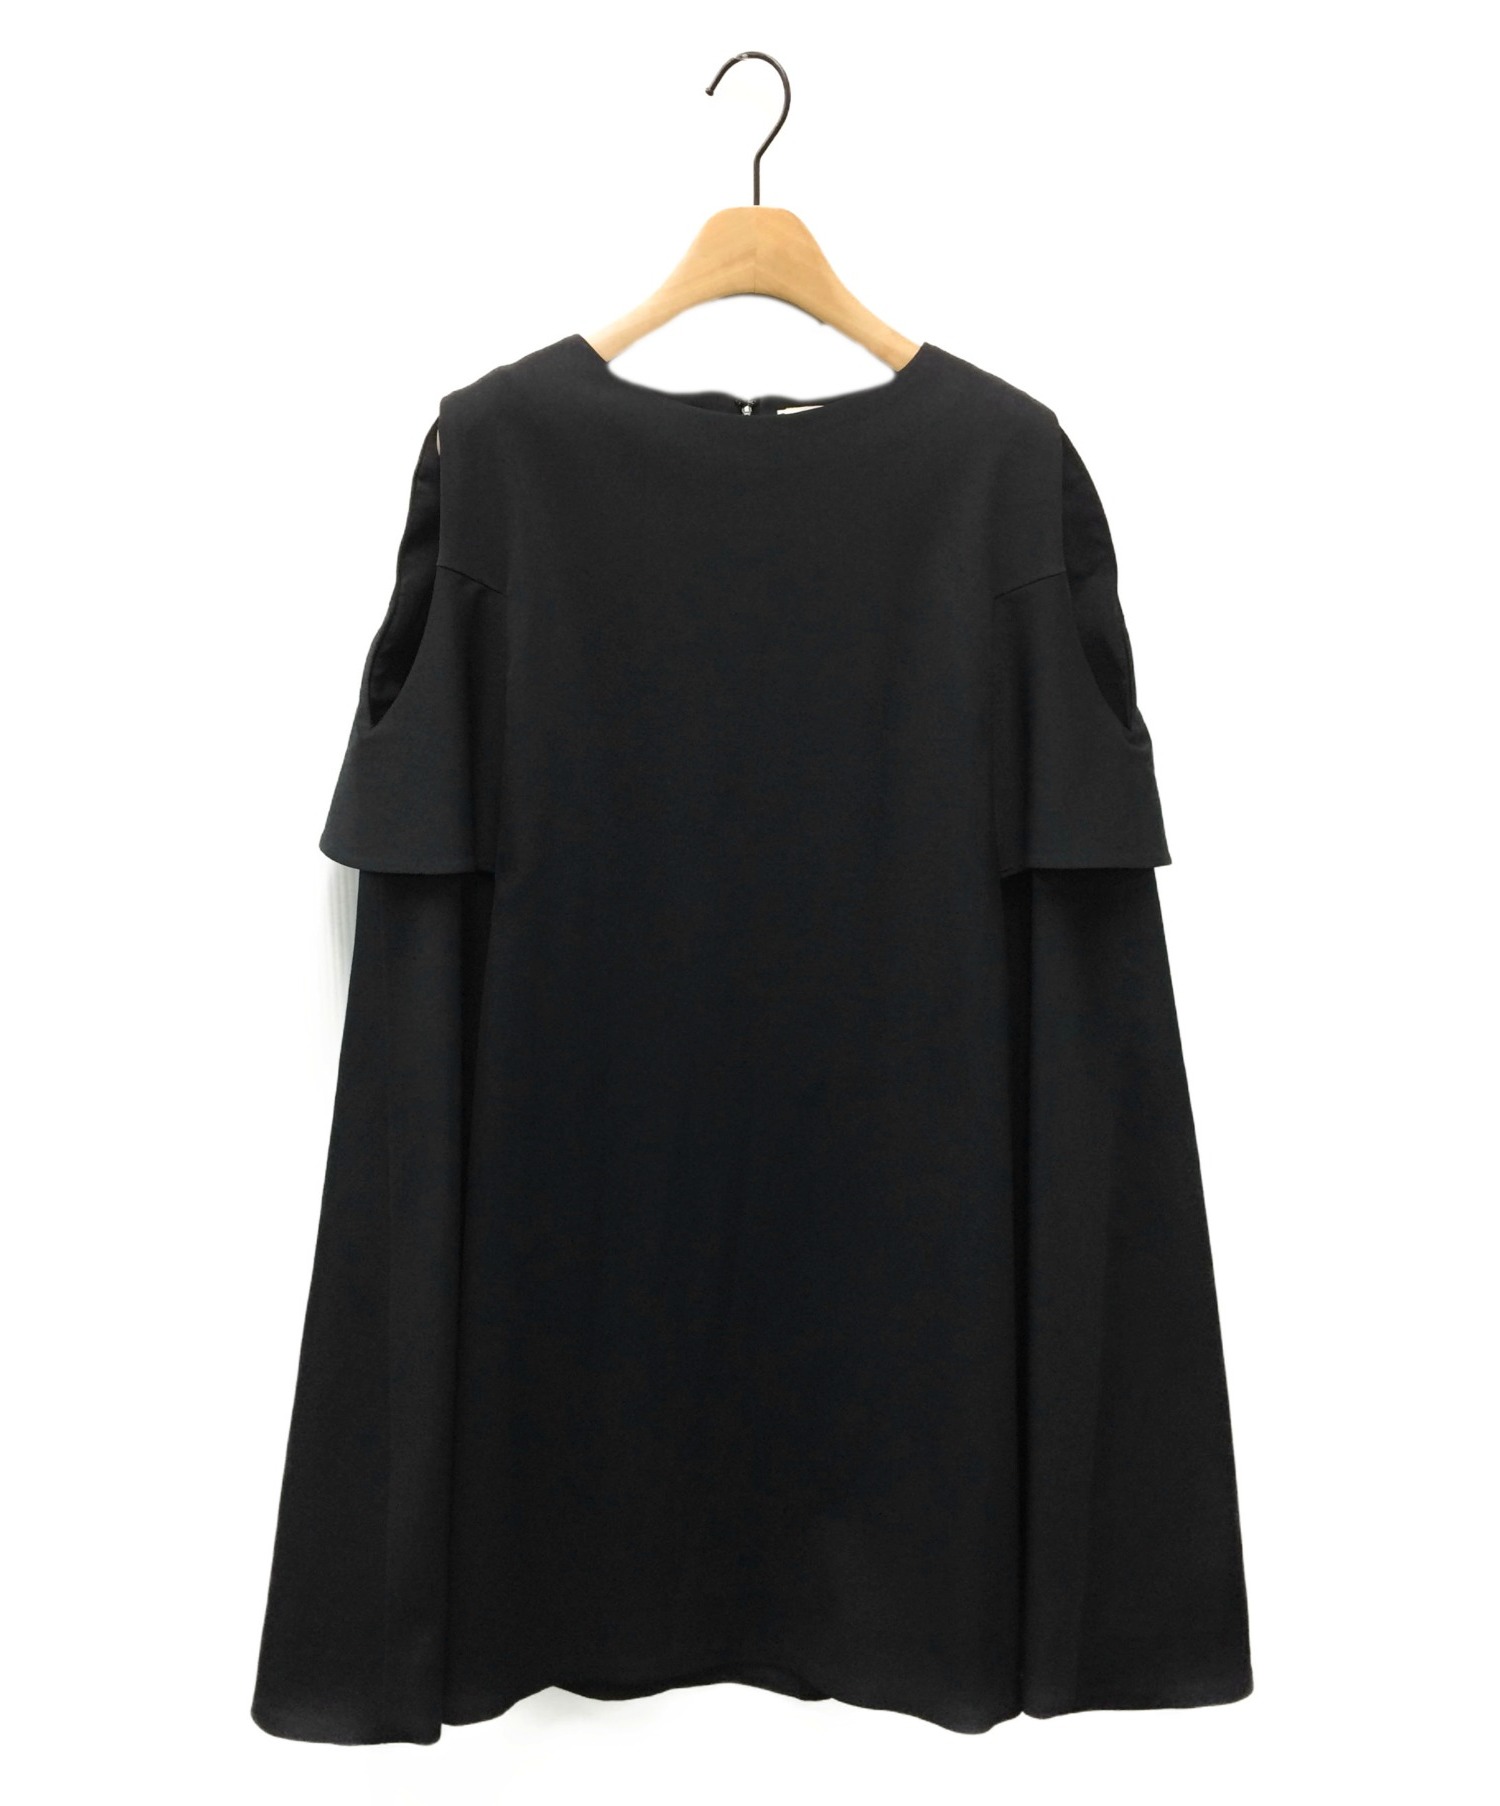 中古 古着通販 Rekisami レキサミ ワンピース ブラック サイズ 36 ブランド 古着通販 トレファク公式 Trefac Fashion